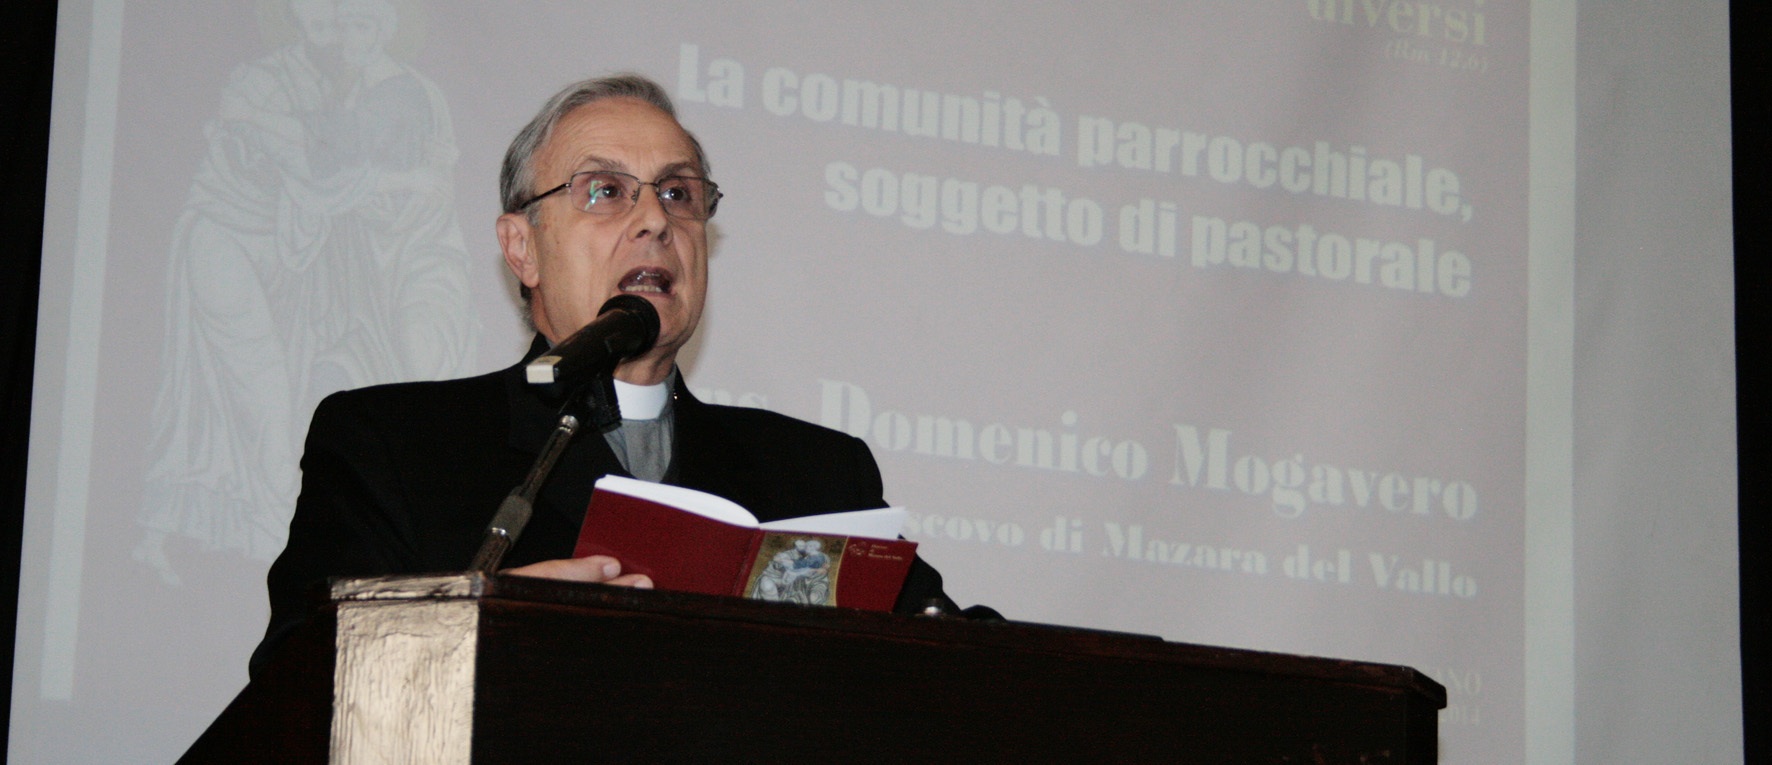 Al Convegno diocesano ci sarà anche la veglia per don Pino Puglisi